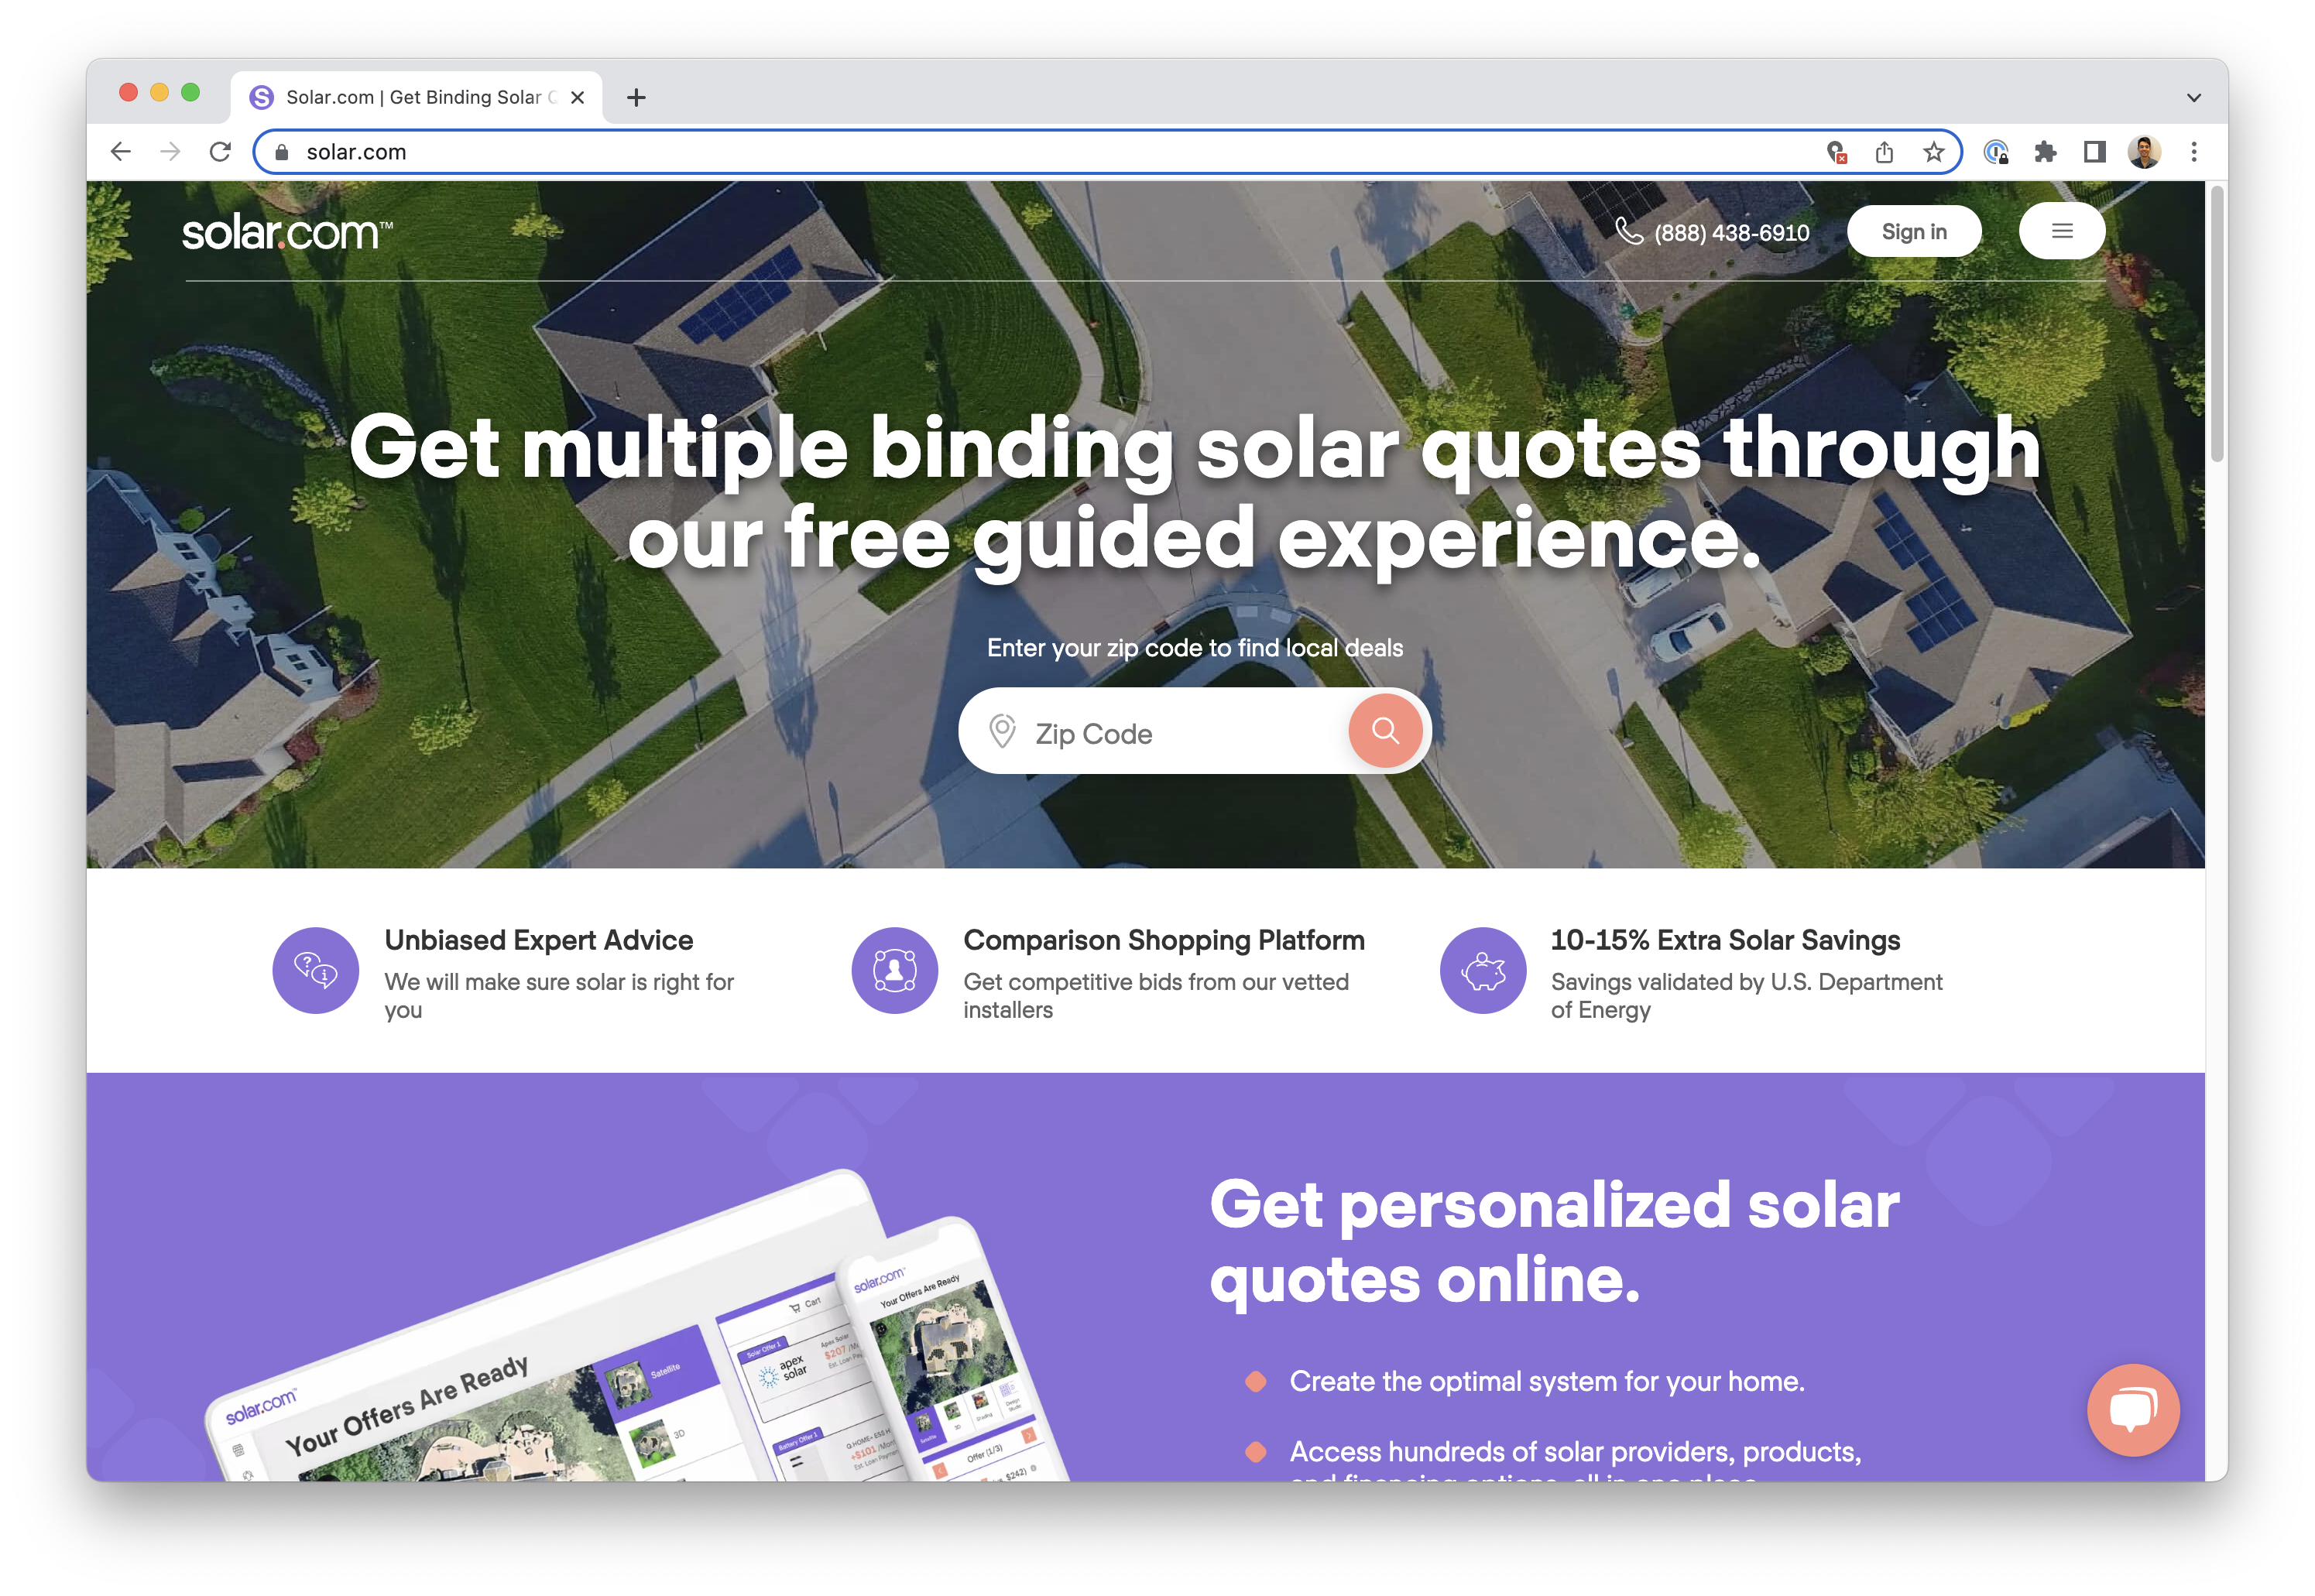 solar.com